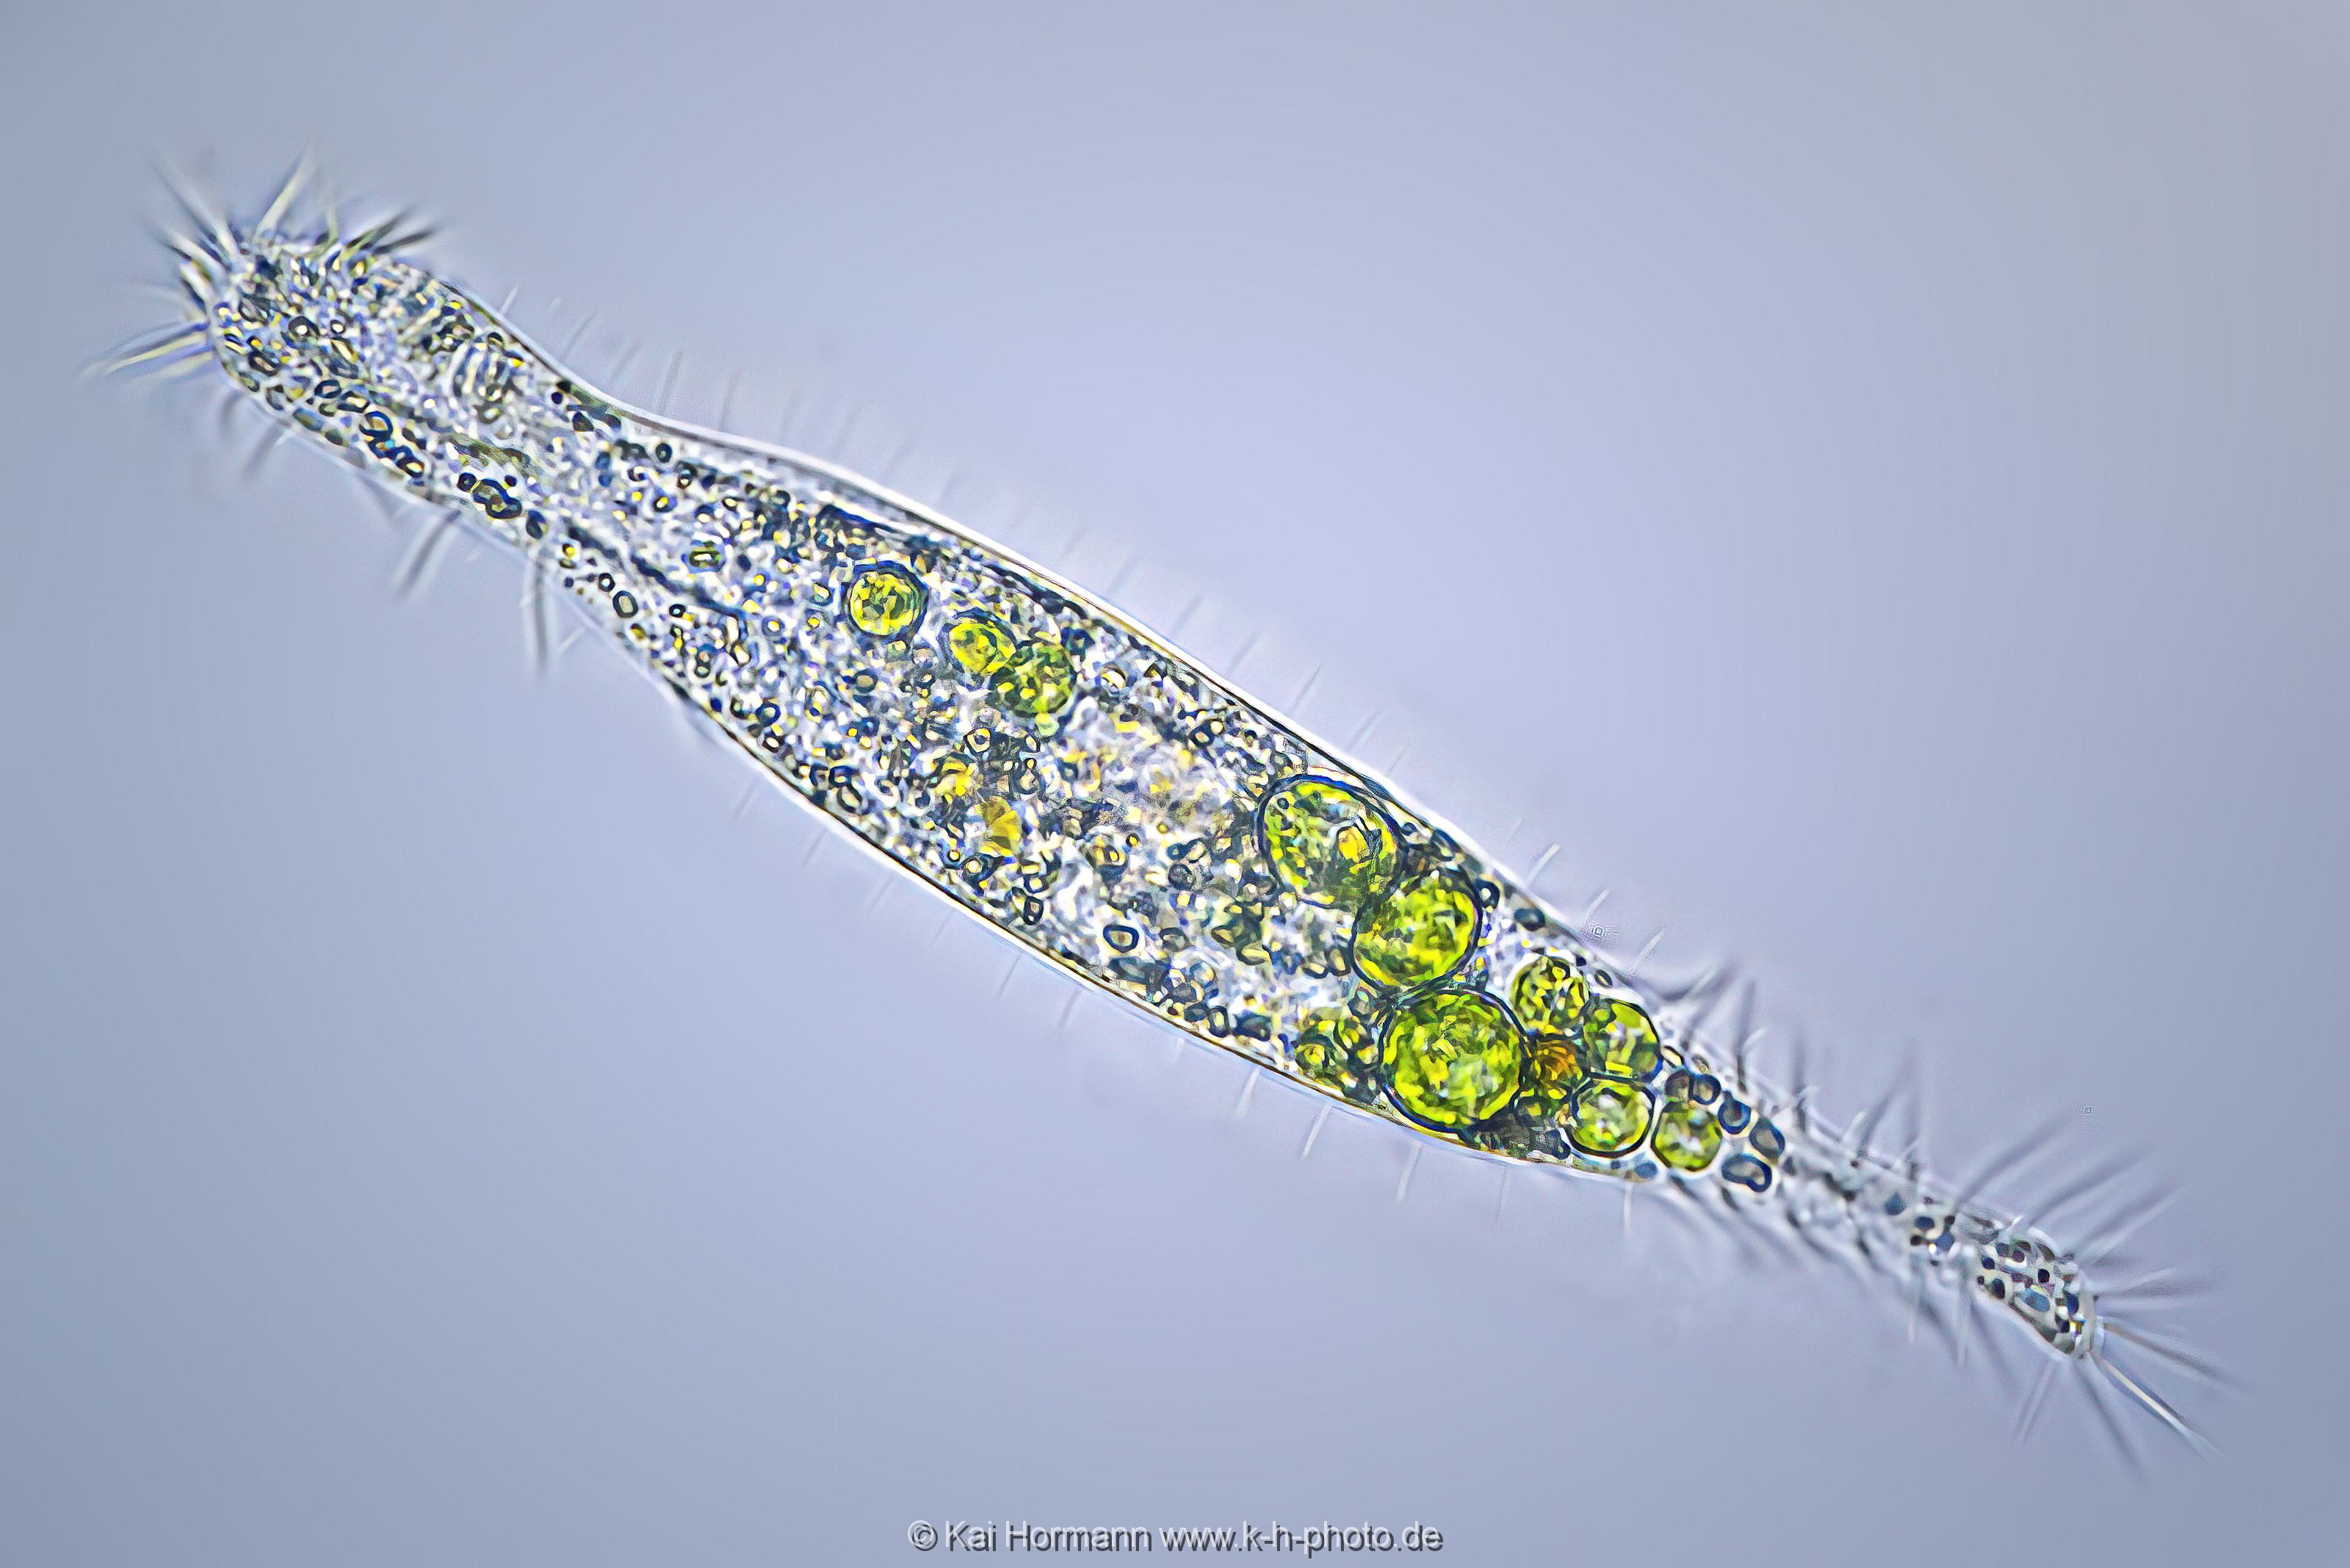 Wimpertierchen_uroleptus_caudatus. Mikrofotografie: Mikroskopische Aufnahmen von Einzellern, Algen und Kleinstlebewesen.